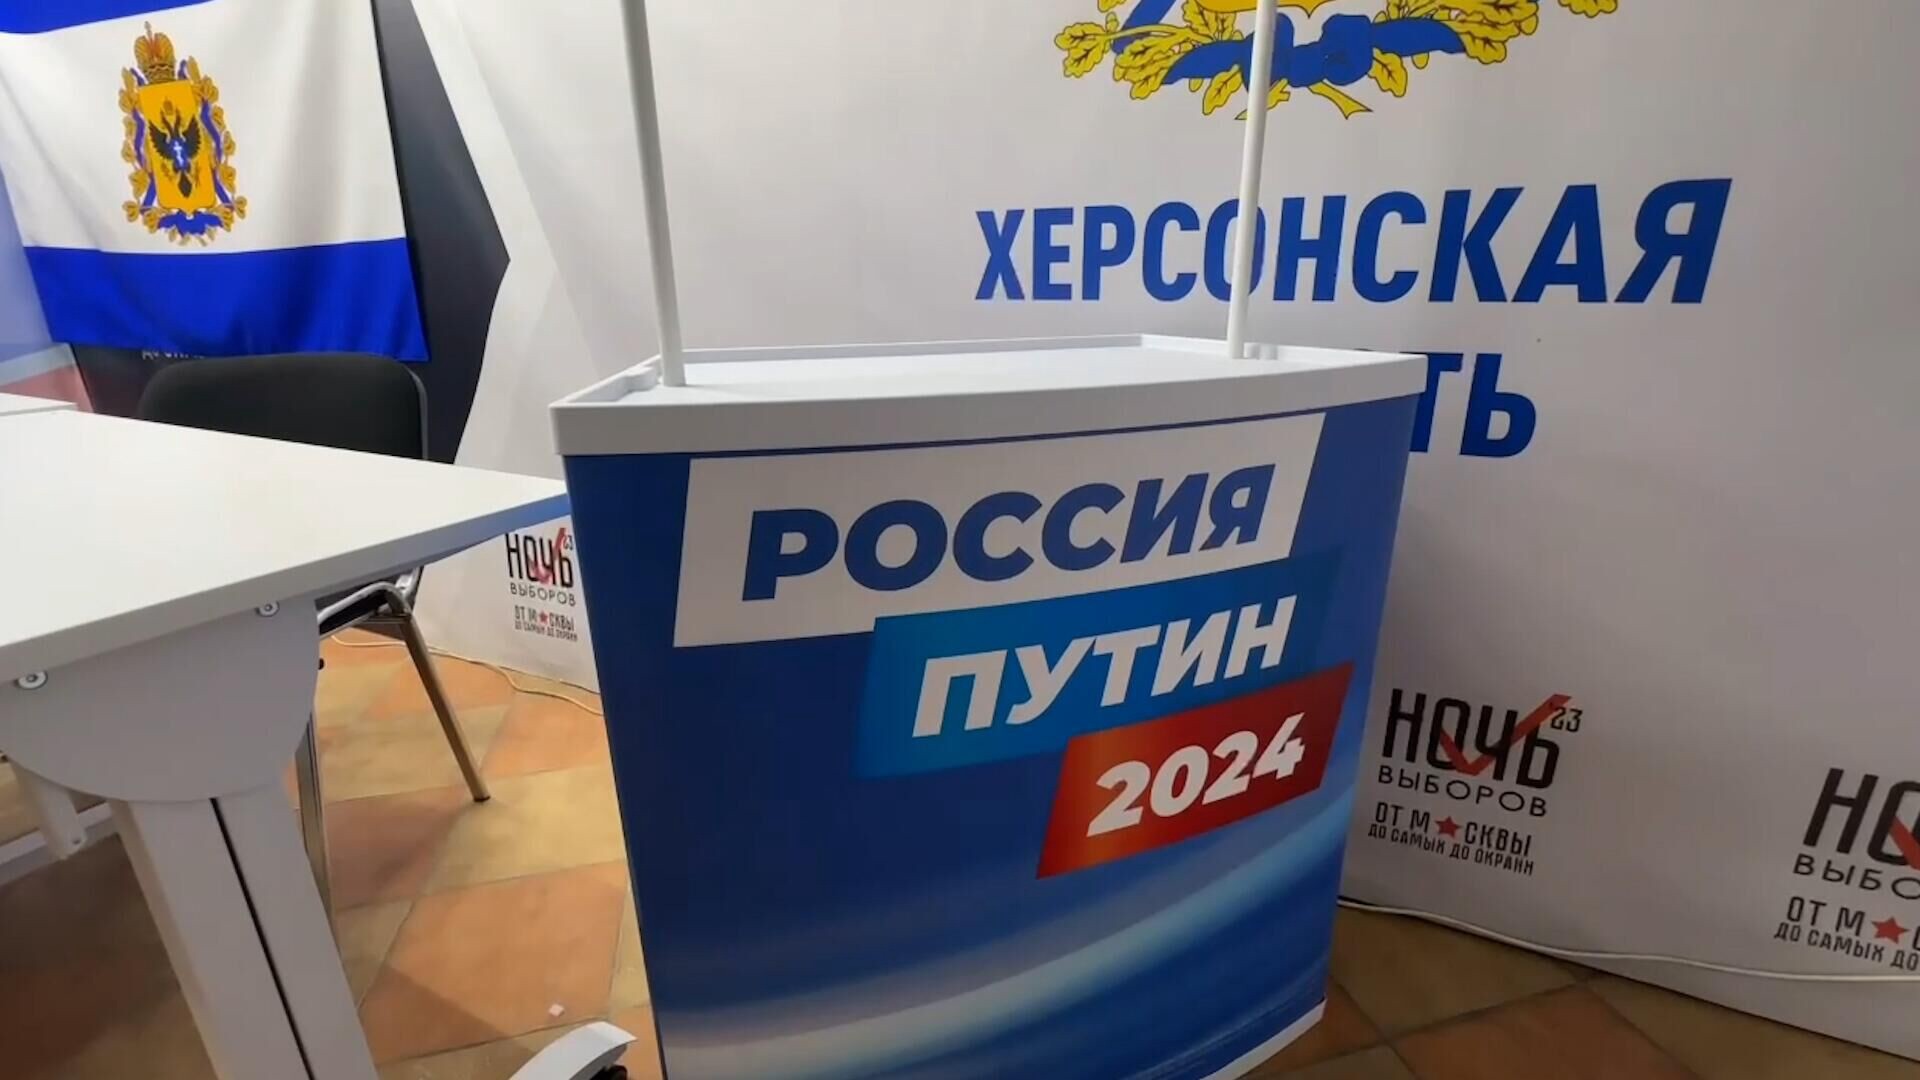 Первая точка сбора подписей в поддержку Путина открыта в Херсонской области